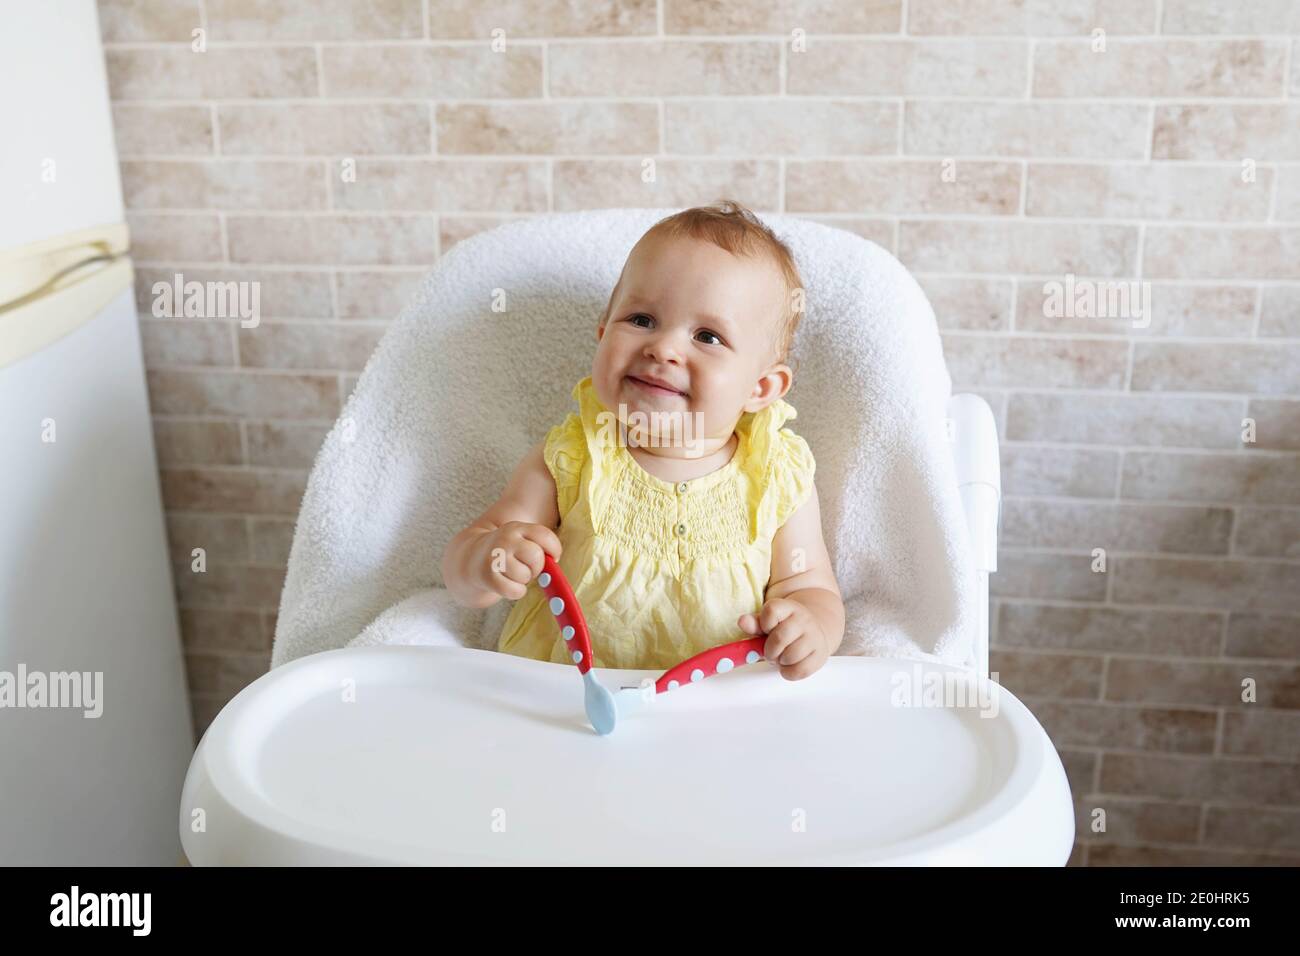 Baby mangiare in cucina spazio vuoto table.Child's nutrizione. Foto Stock